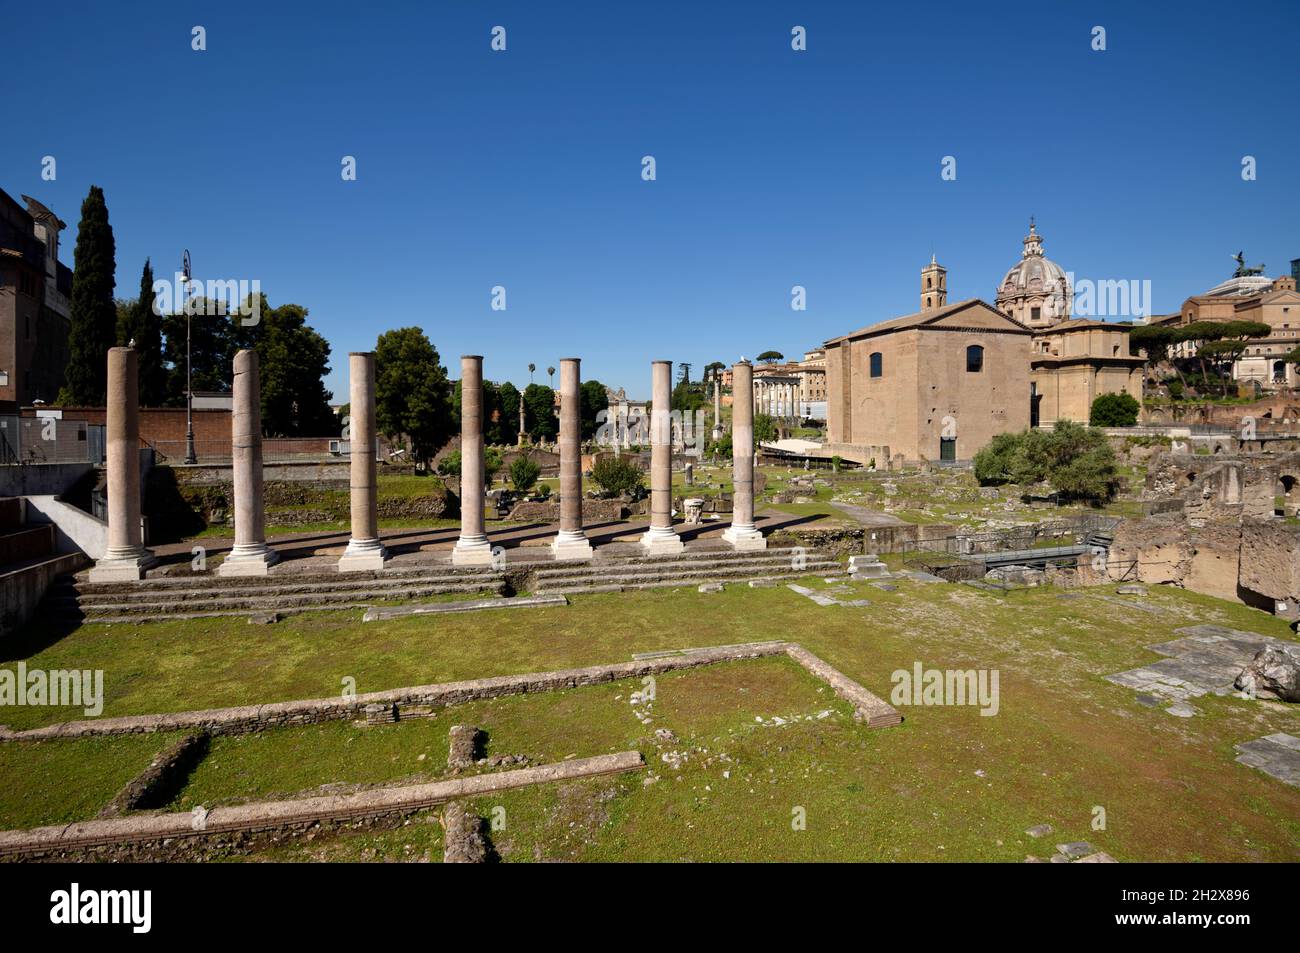 Italia, Roma, Foro romano, foro della pace (forum di pace), le colonne del tempio di pace Foto Stock